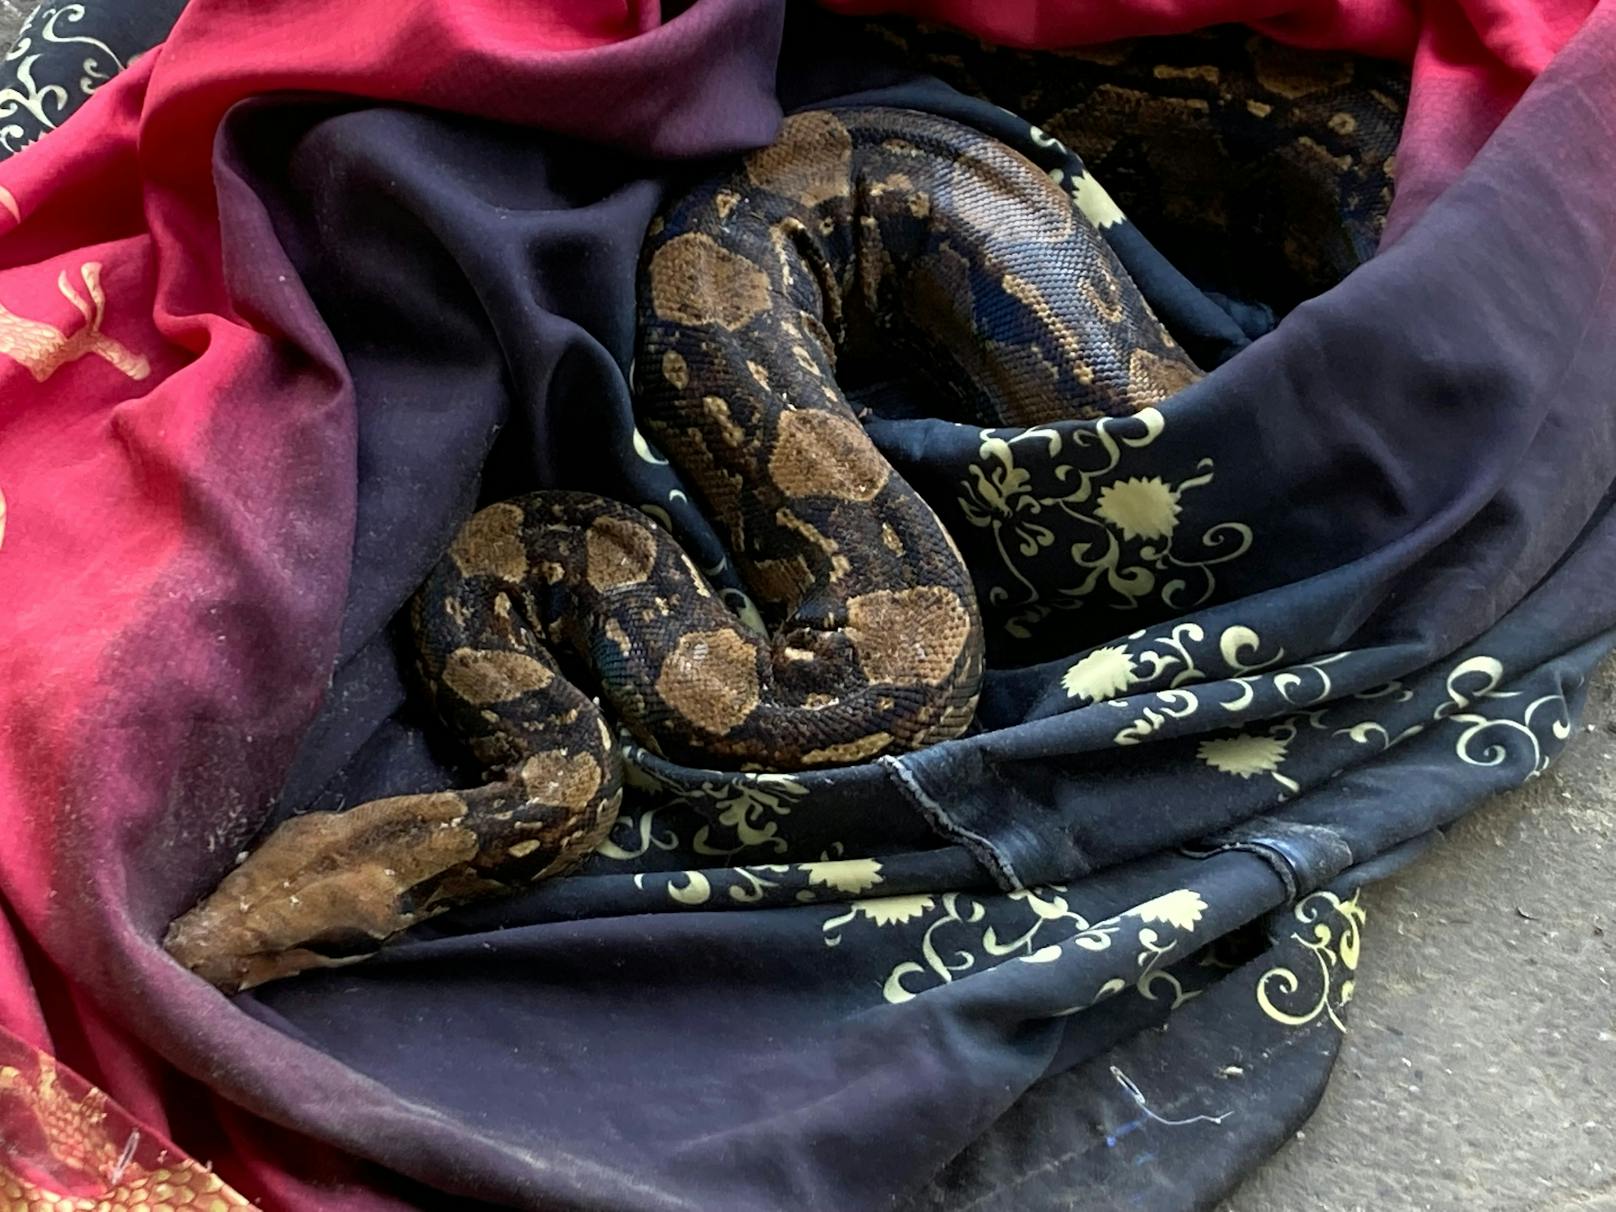 Tödliche 12-Kilo-Python im Restmüll entdeckt